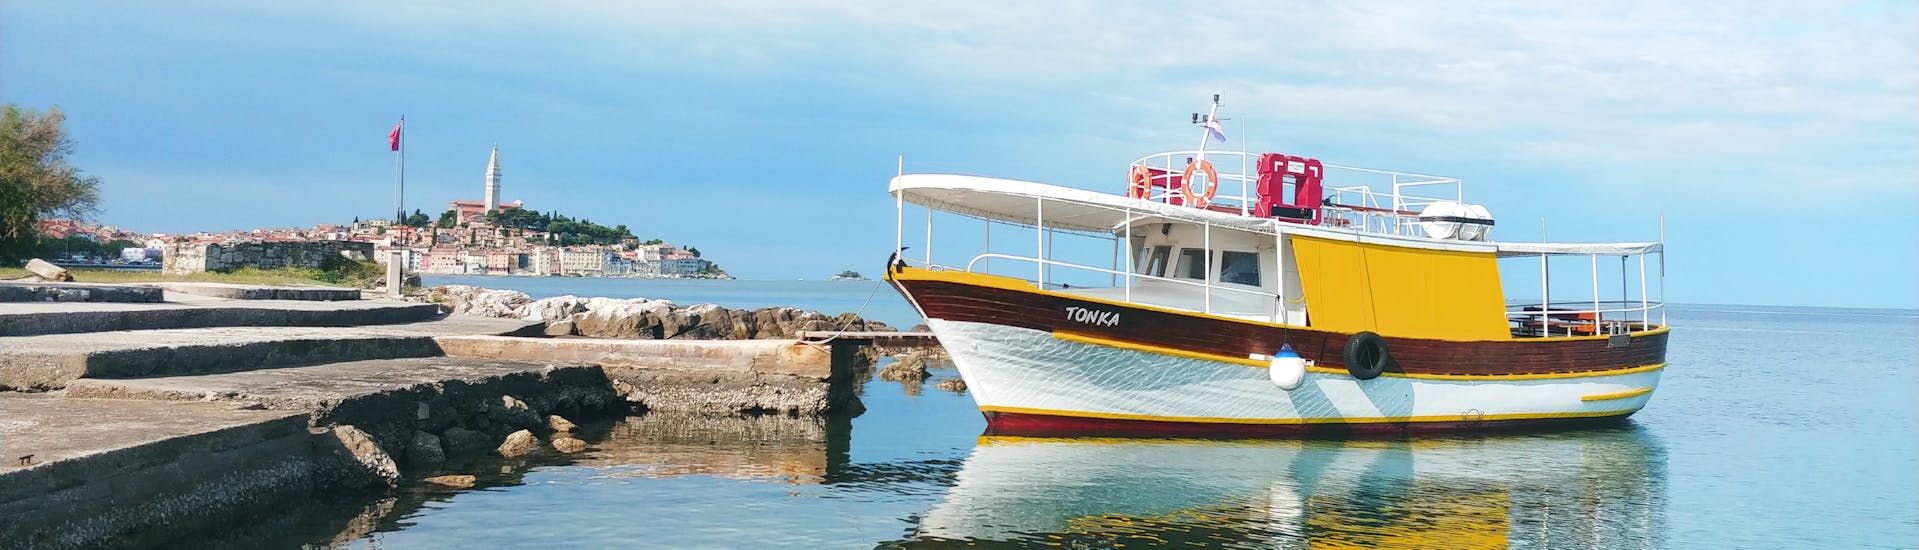 Immagine della barca chiamata Tonka durante la gita in barca al fiordo di Leme e Grotta di S. Romualdo con Boat Excursions Tonka Rovinj.